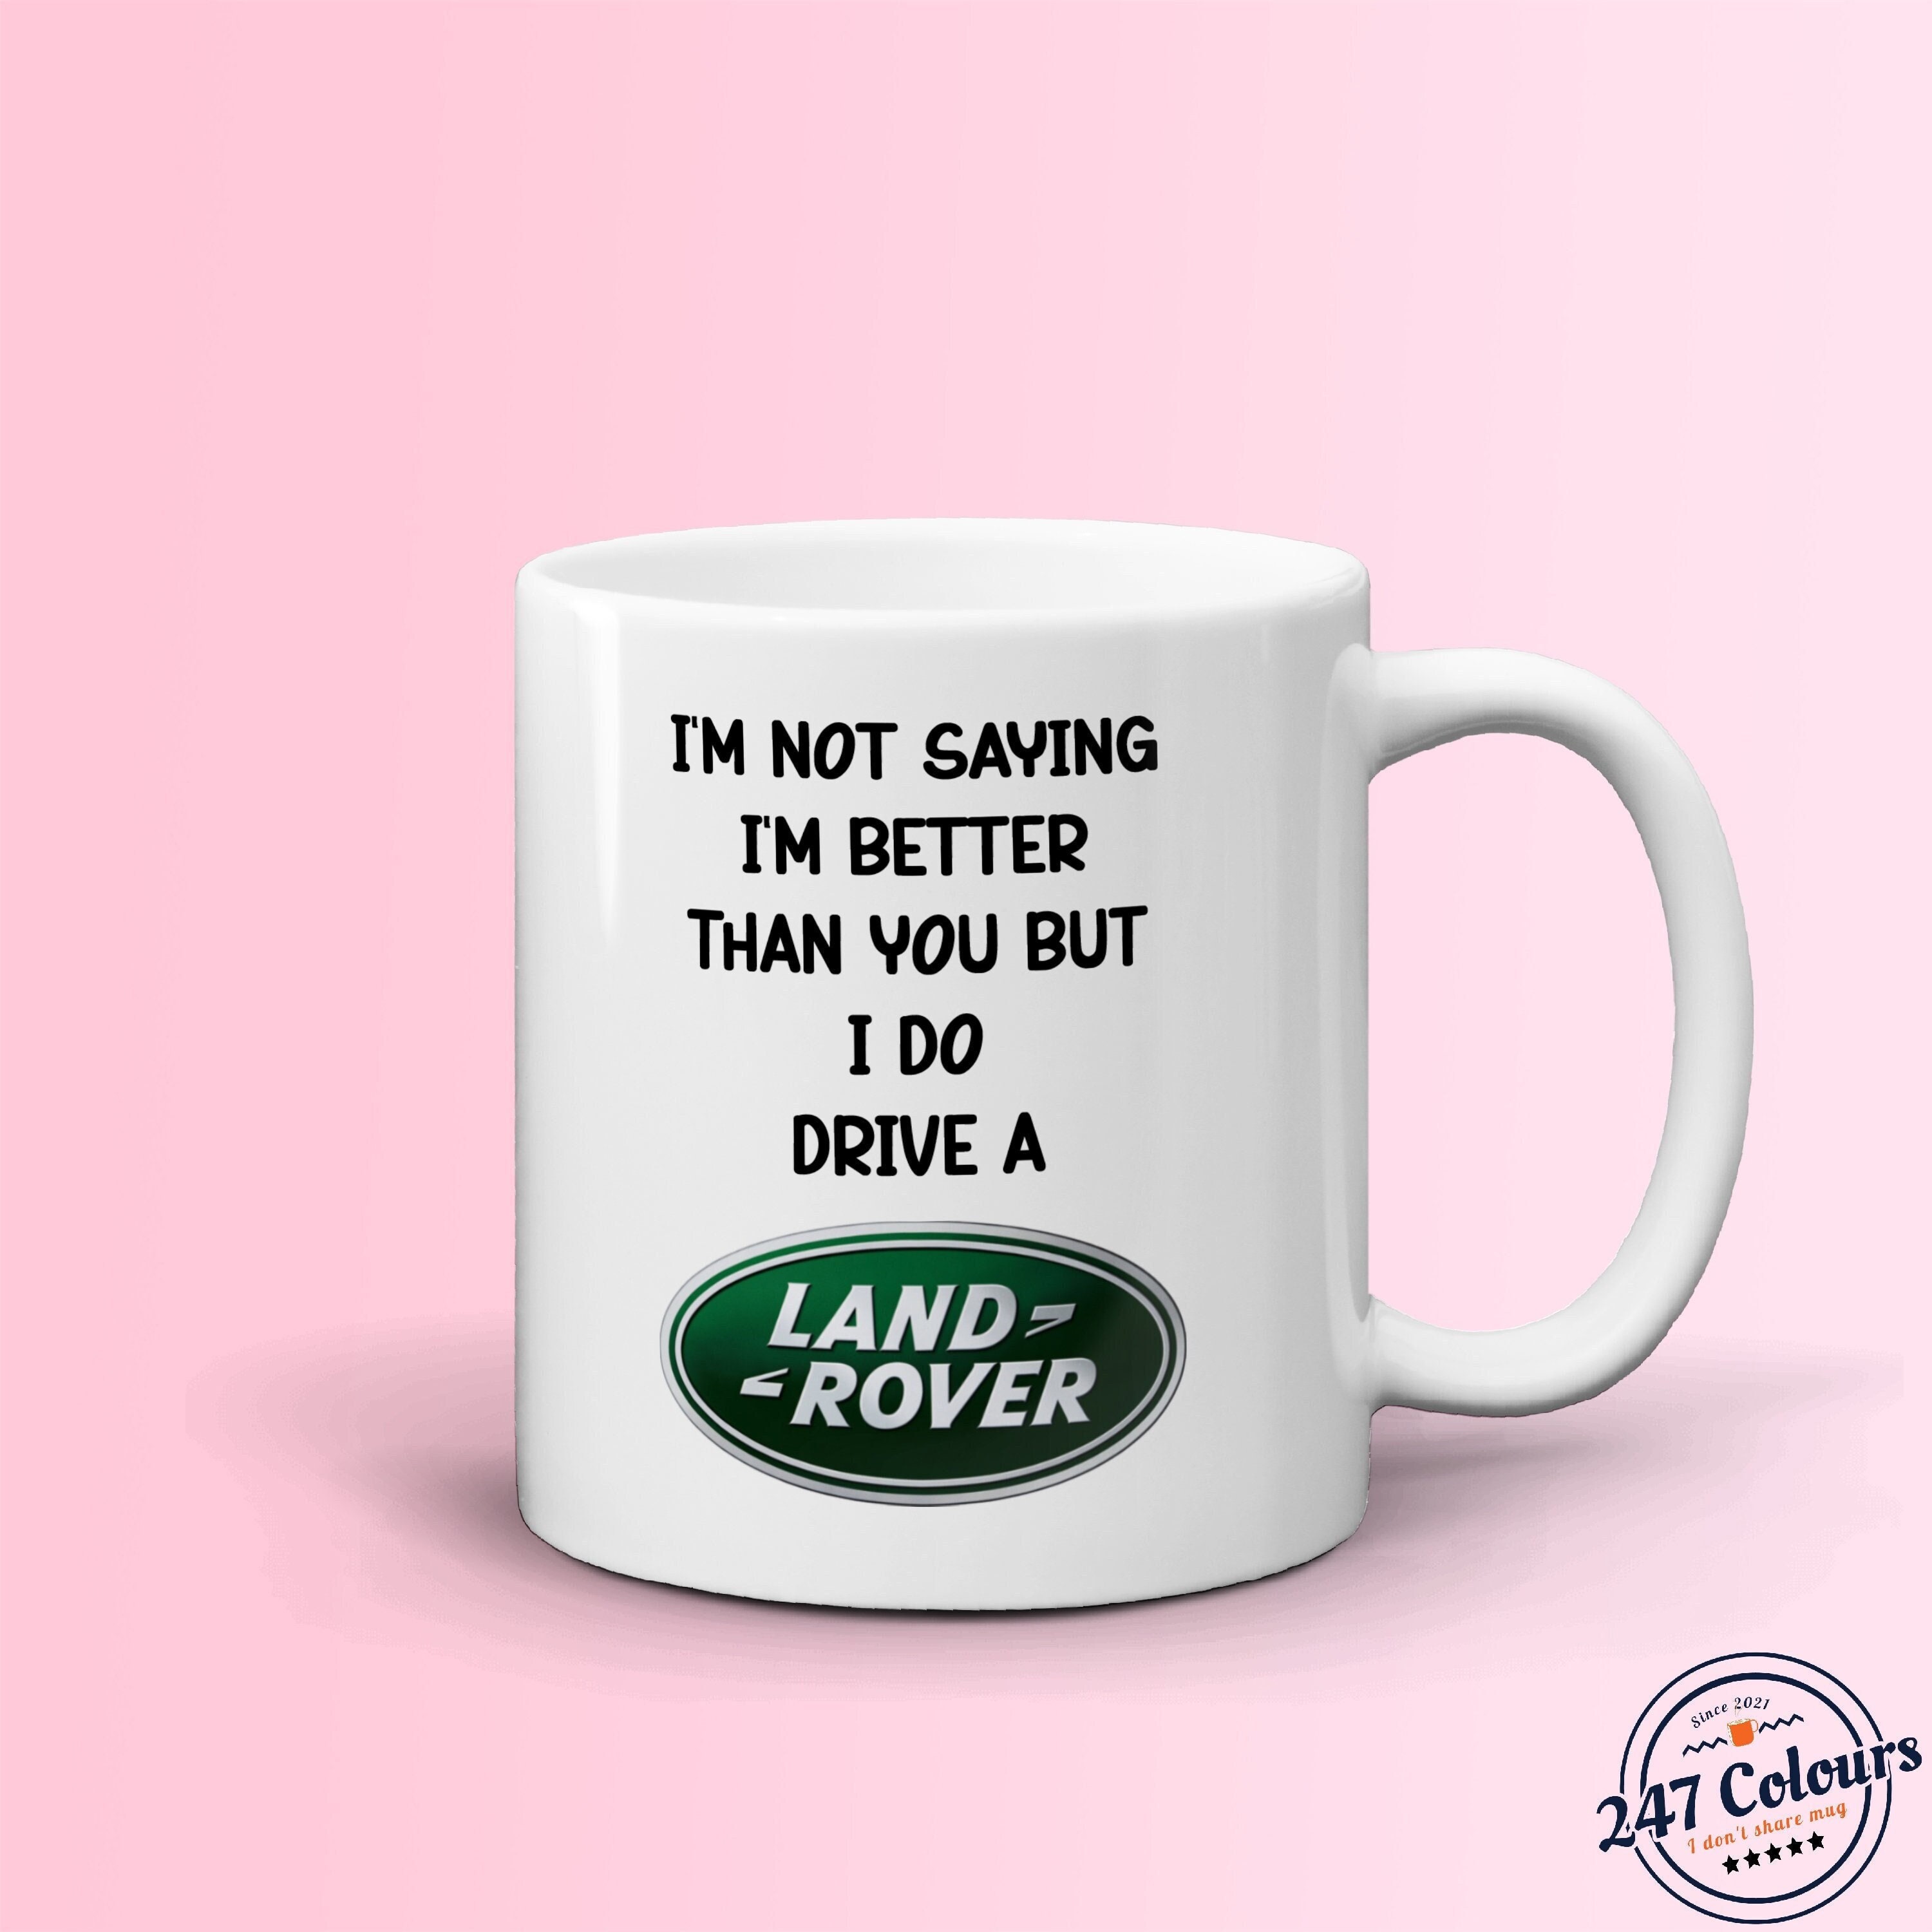 Car illustration - land rover defender Travel Mug by Rapt design